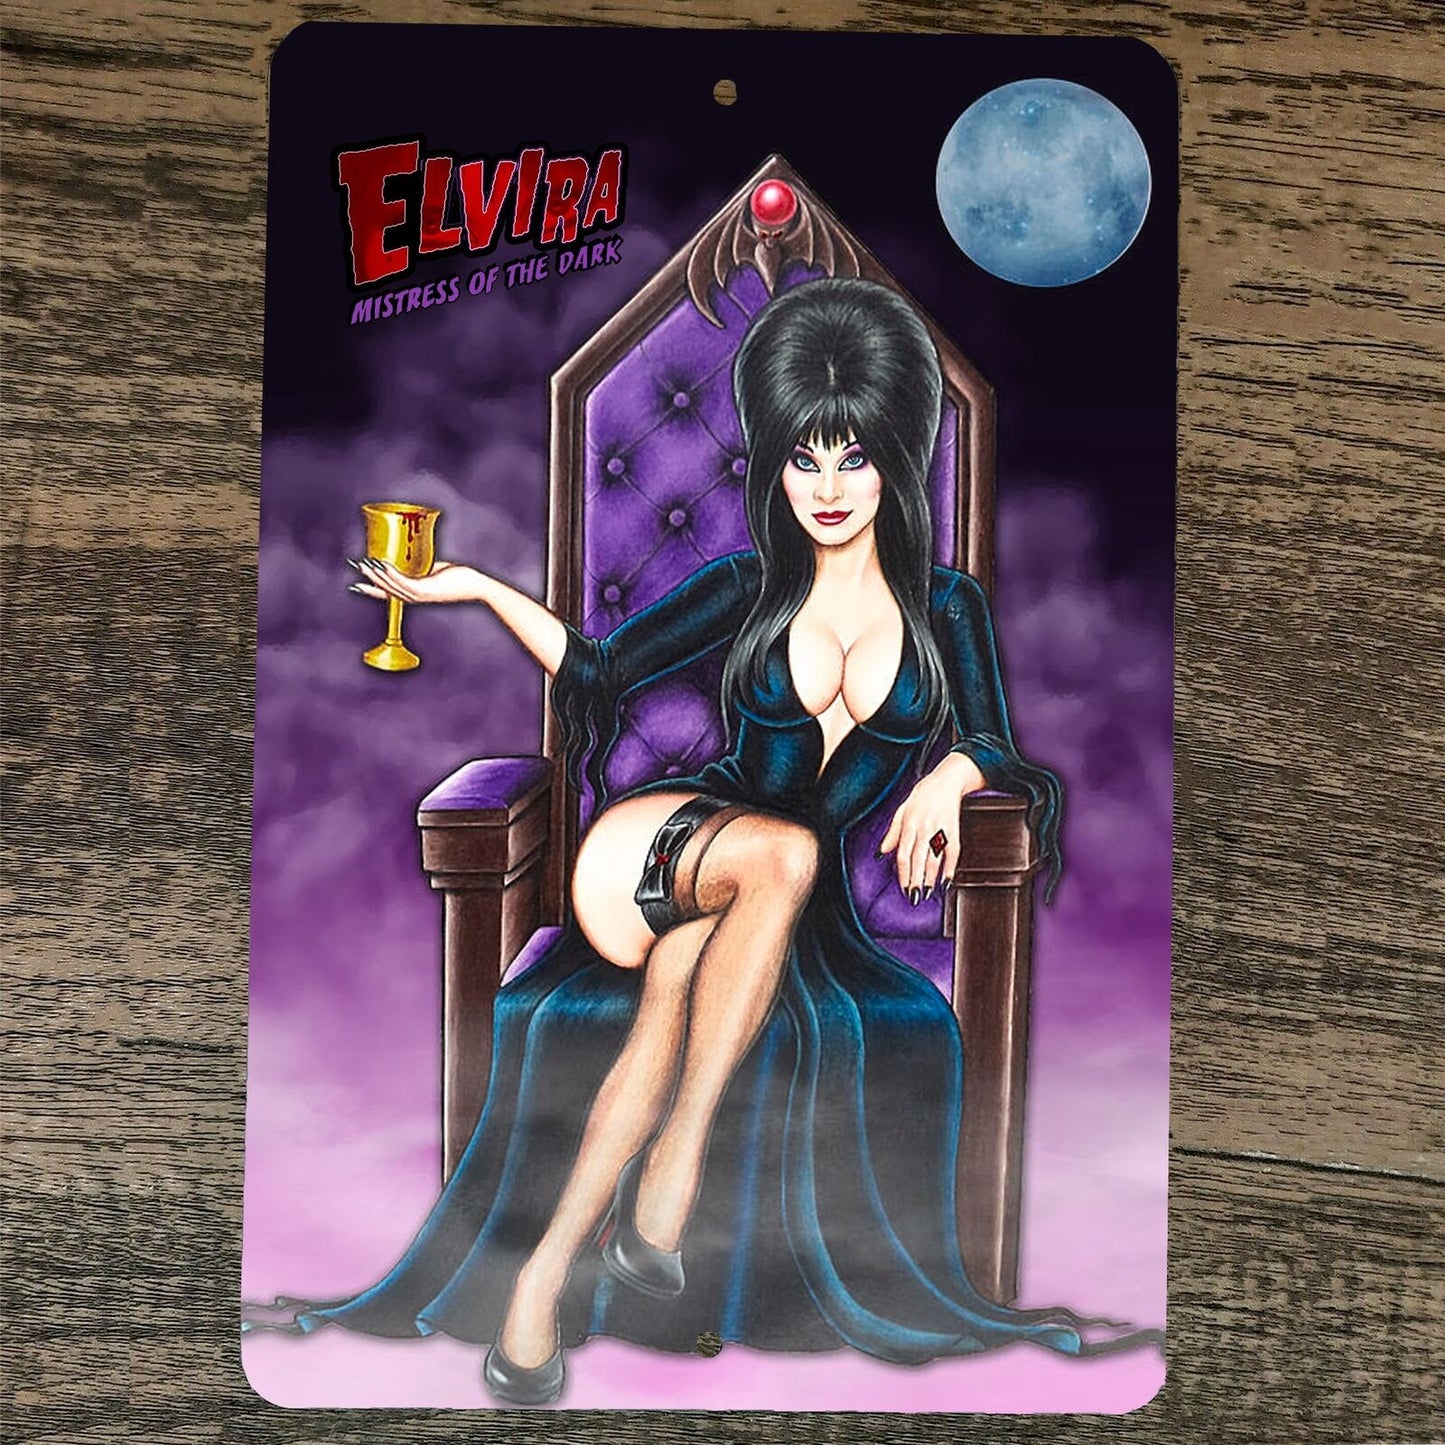 Queen Elvira Mistress of the Dark 8x12 Metal Wall Sign Poster